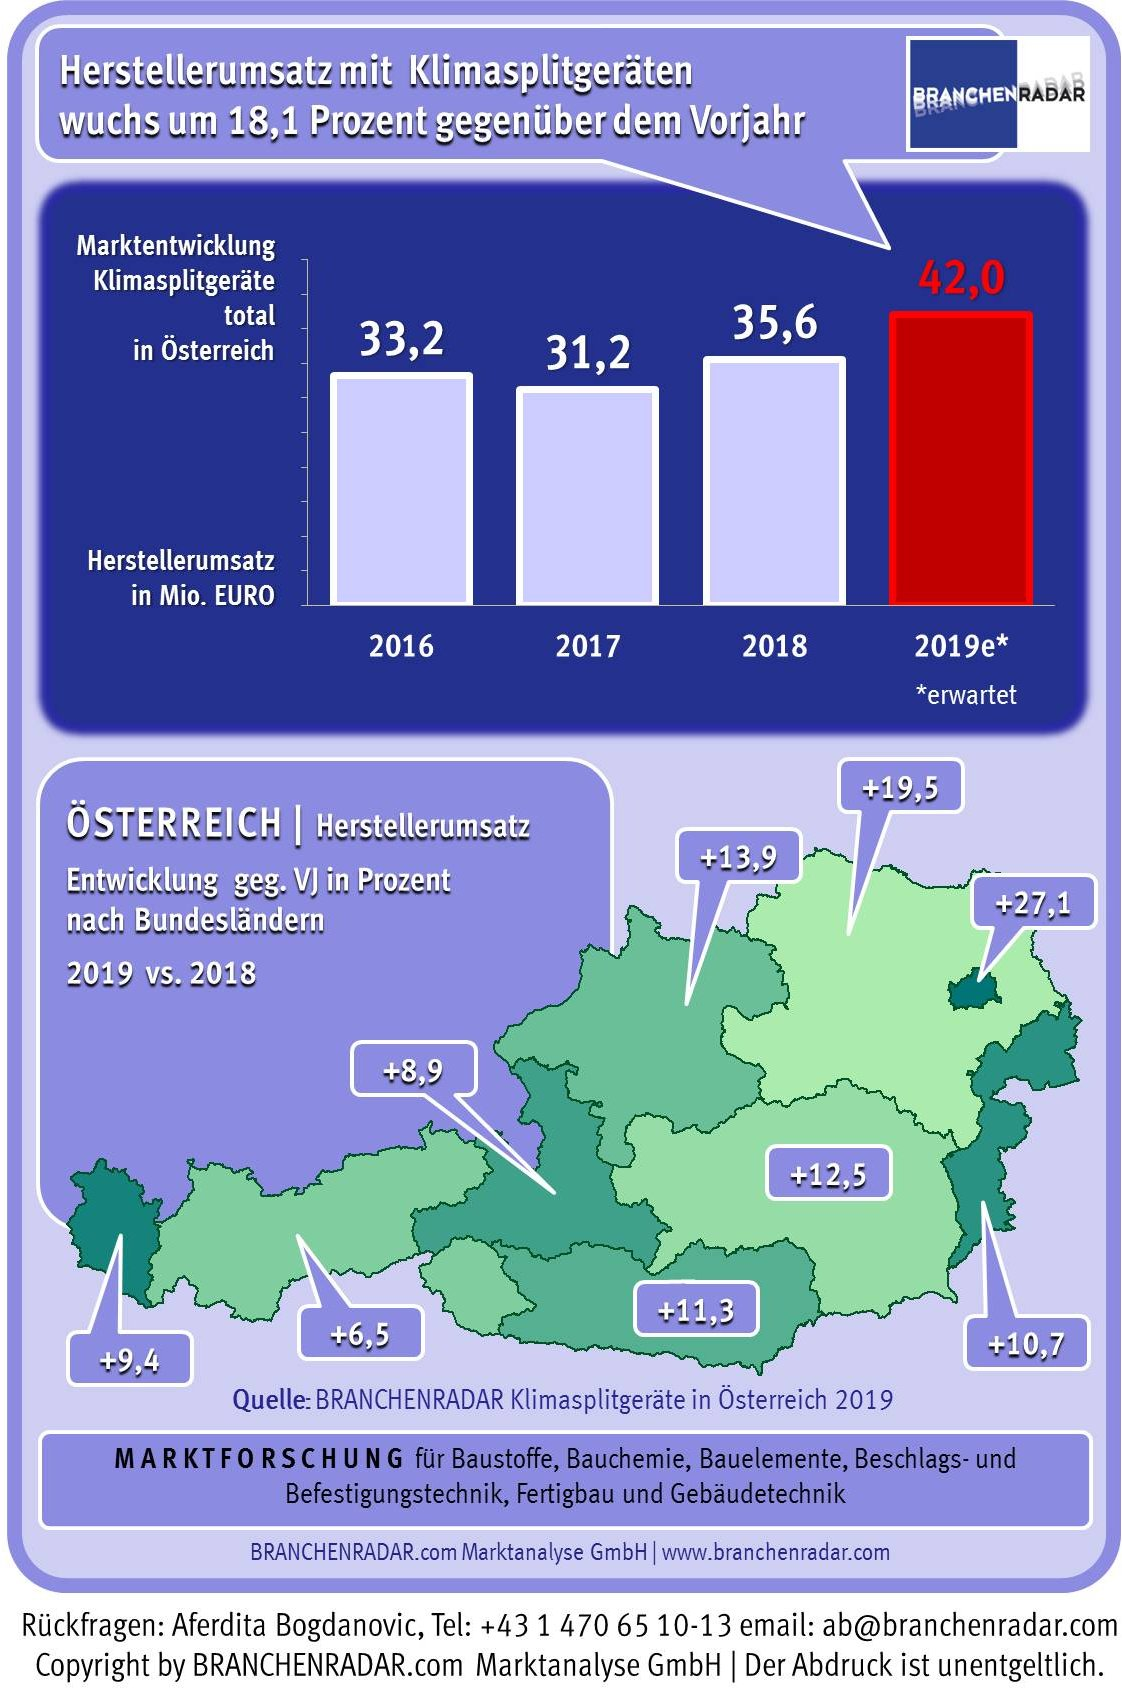 Der Markt für Klimasplitgeräte wächst in Österreich im laufenden Jahr voraussichtlich um 18 Prozent gegenüber Vorjahr, zeigen aktuelle Daten einer Marktstudie zu Klimasplitgeräten in Österreich von BRANCHENRADAR.com Marktanalyse.